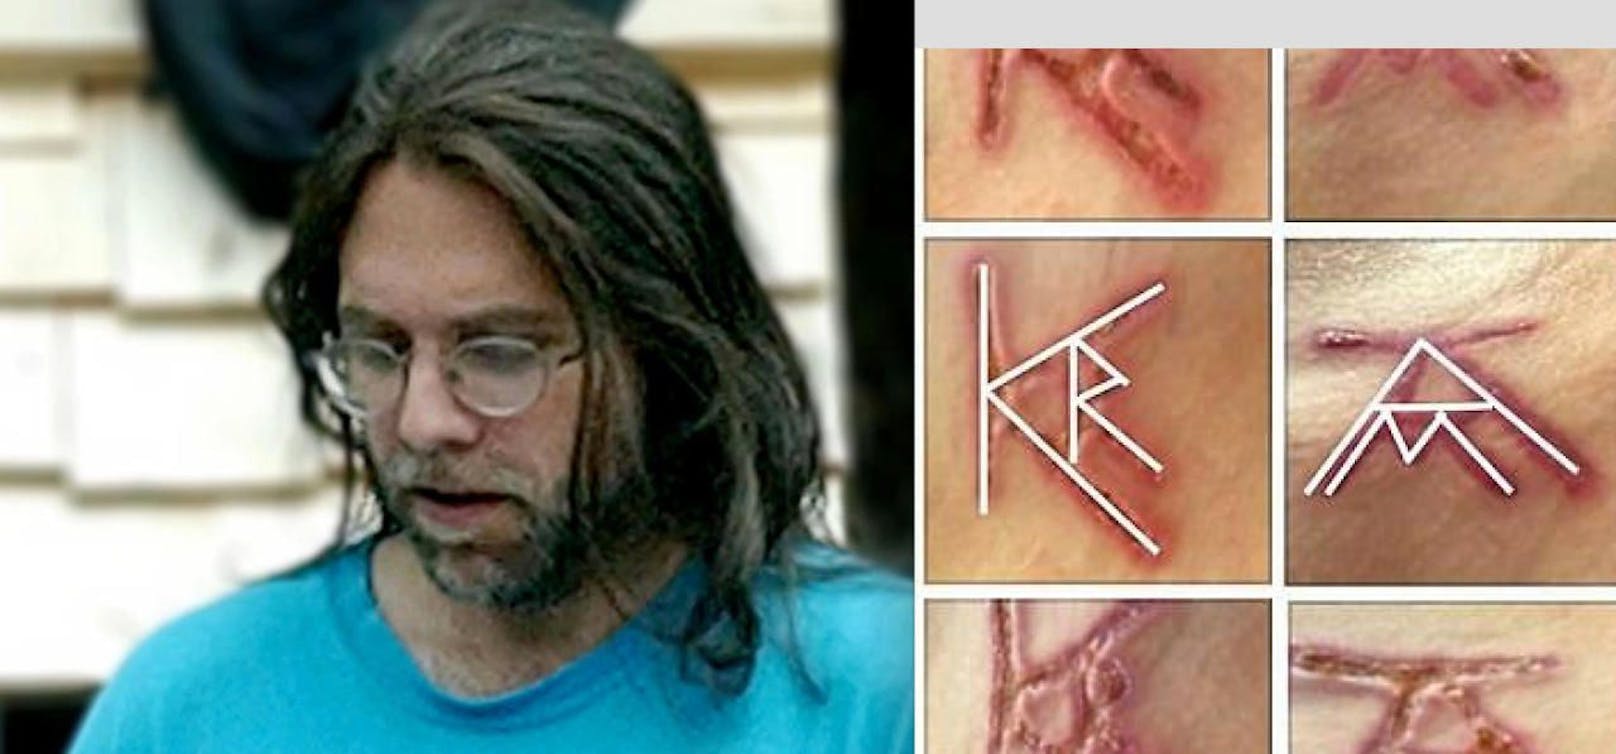 Krank: Sektenguru Keith Raniere (57) soll seinen Sex-Sklavinnen seine Initialen in die Haut gebrandet haben. Er wurde jetzt verhaftet. 